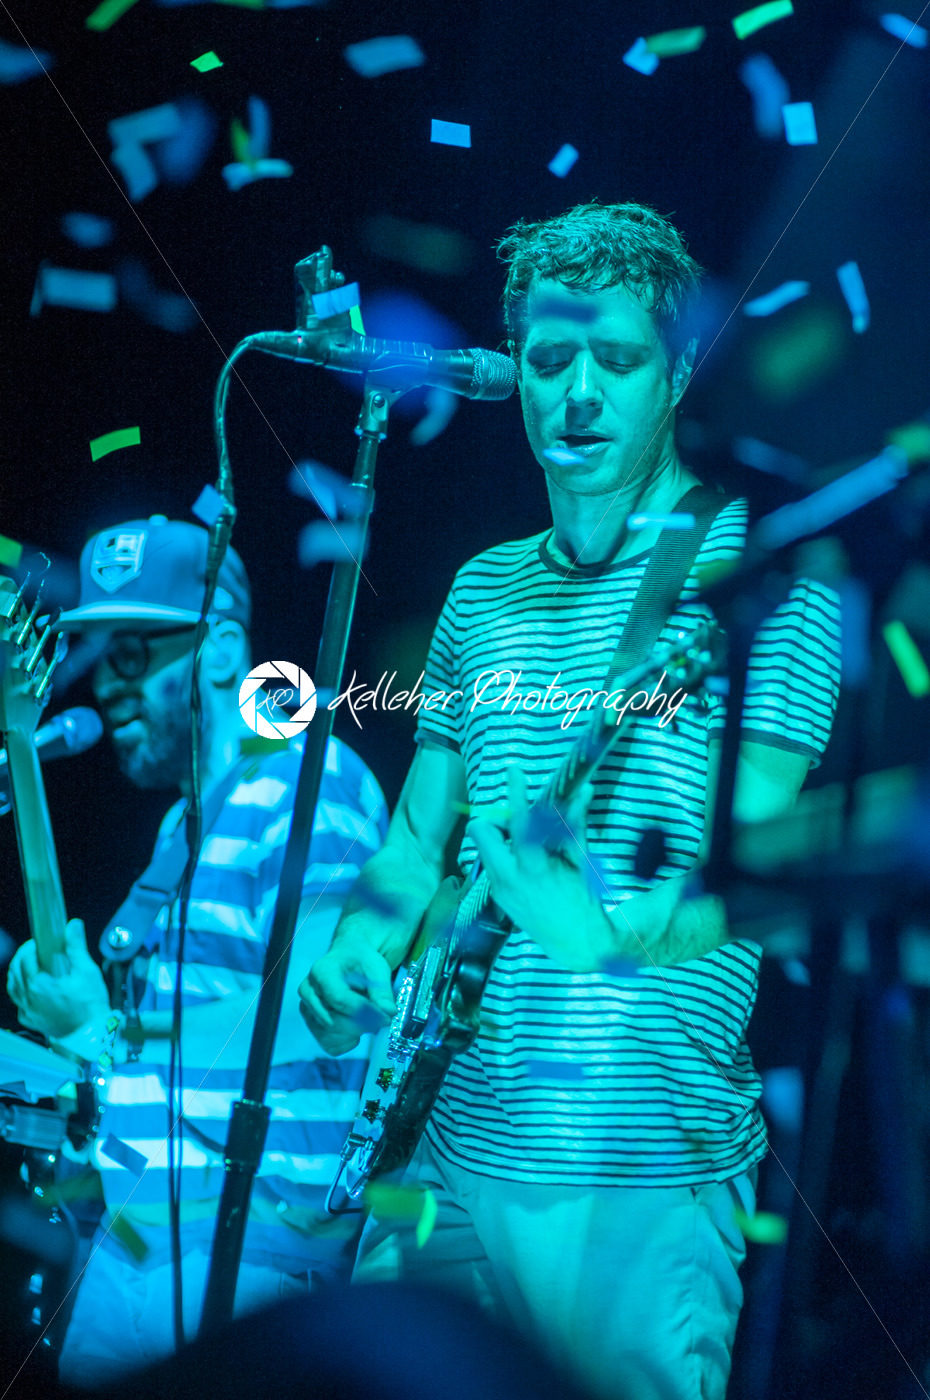 PHILADELPHIA, PA – SEPTEMBER 20: Band OK Go performs in Philadelphia on September 20, 2014. - Kelleher Photography Store